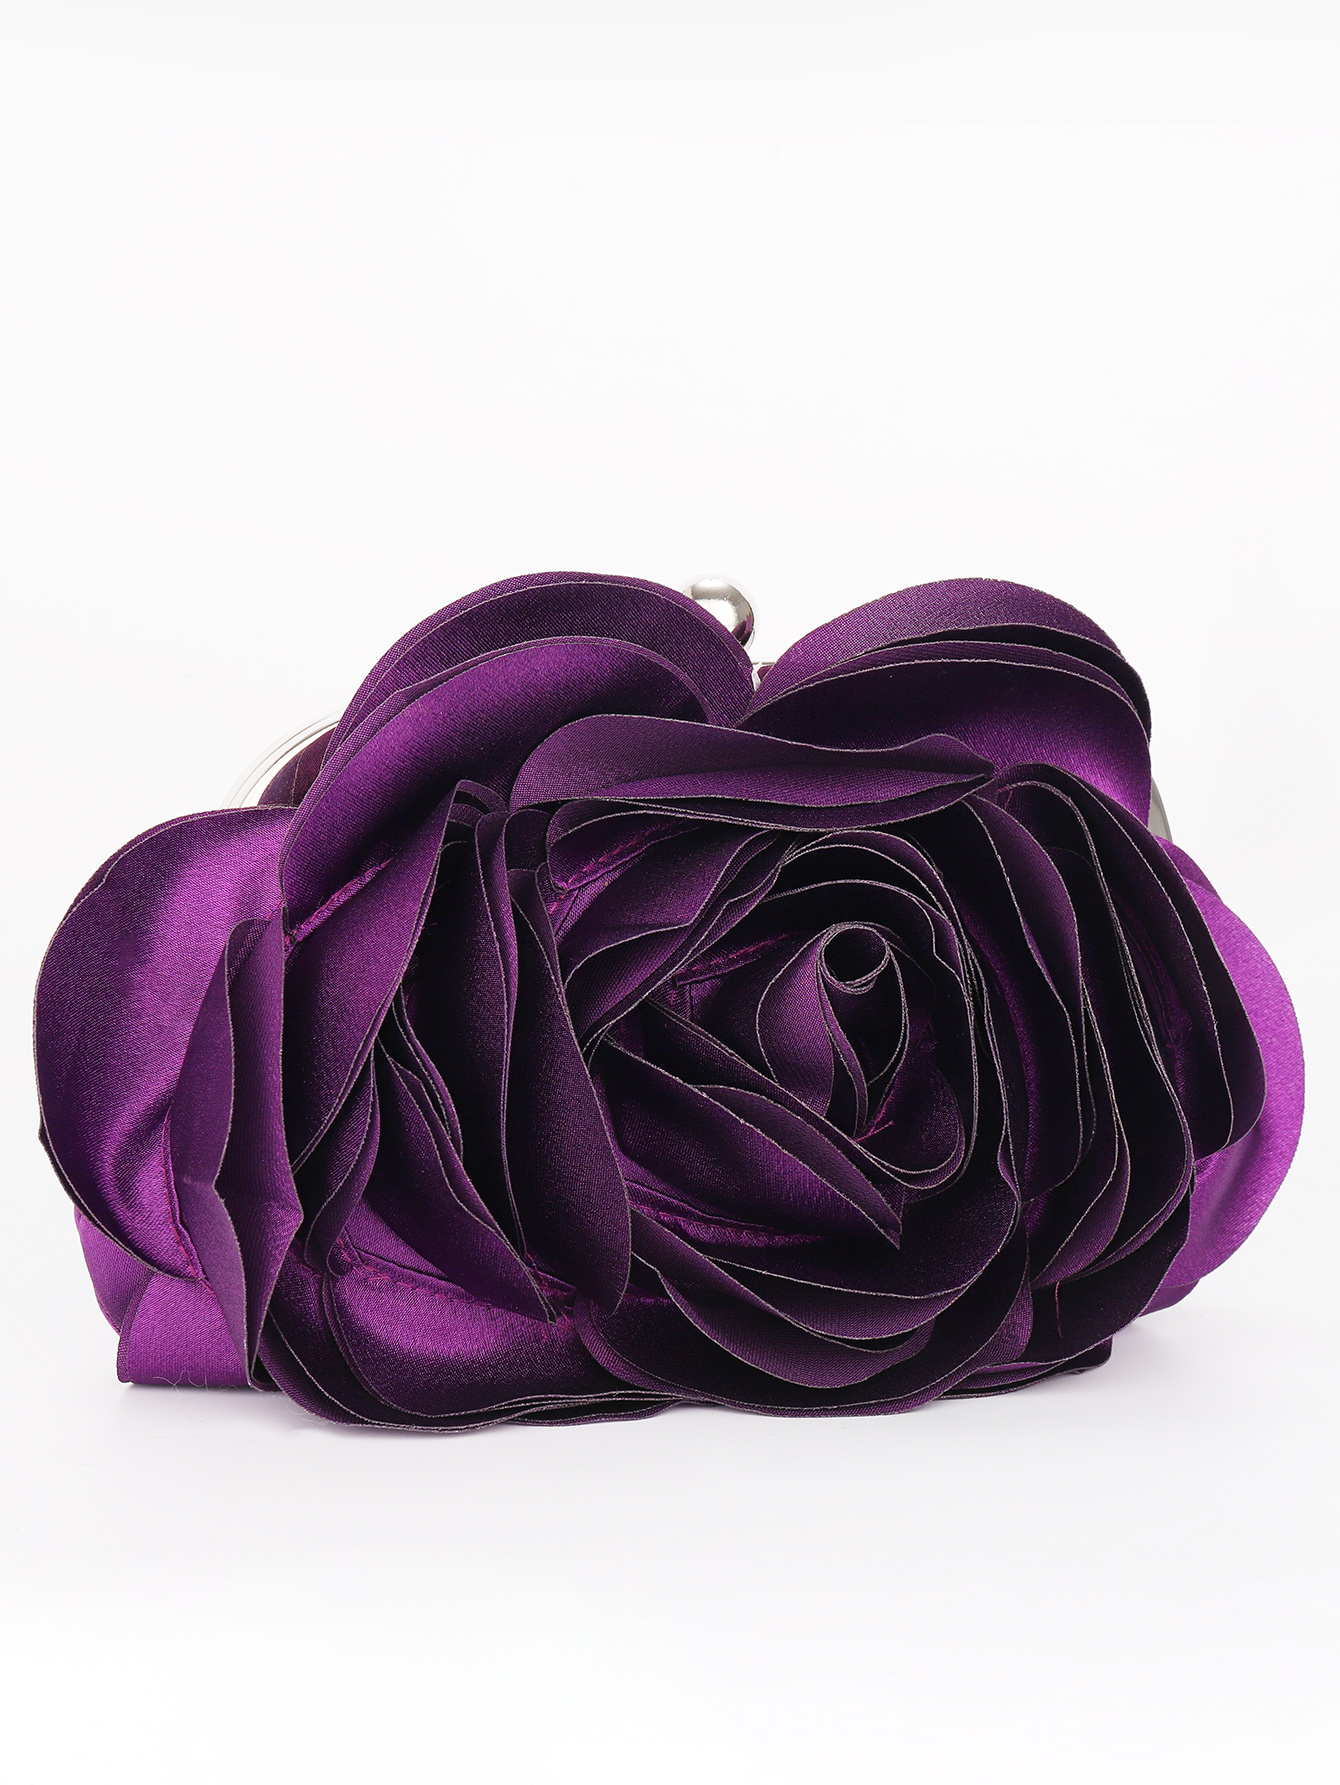 Вечерняя сумка с цветочным принтом, фиолетовый фото